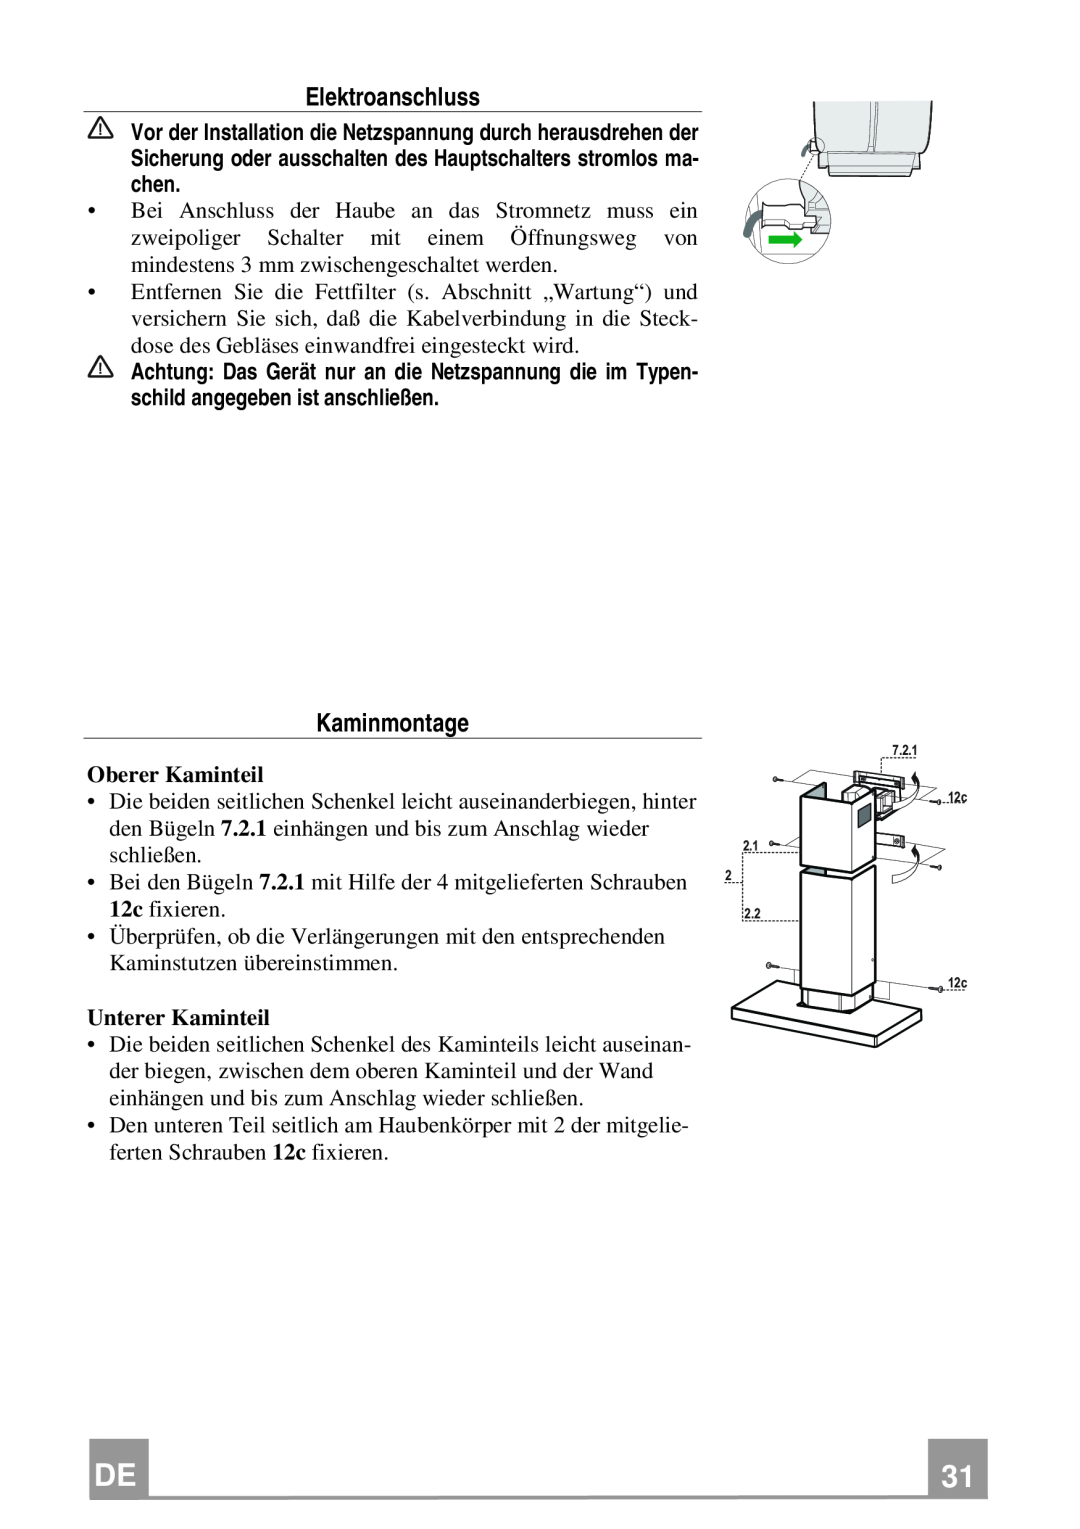 Franke Consumer Products FCR 908 TC manual Elektroanschluss, Kaminmontage, Oberer Kaminteil, Unterer Kaminteil 